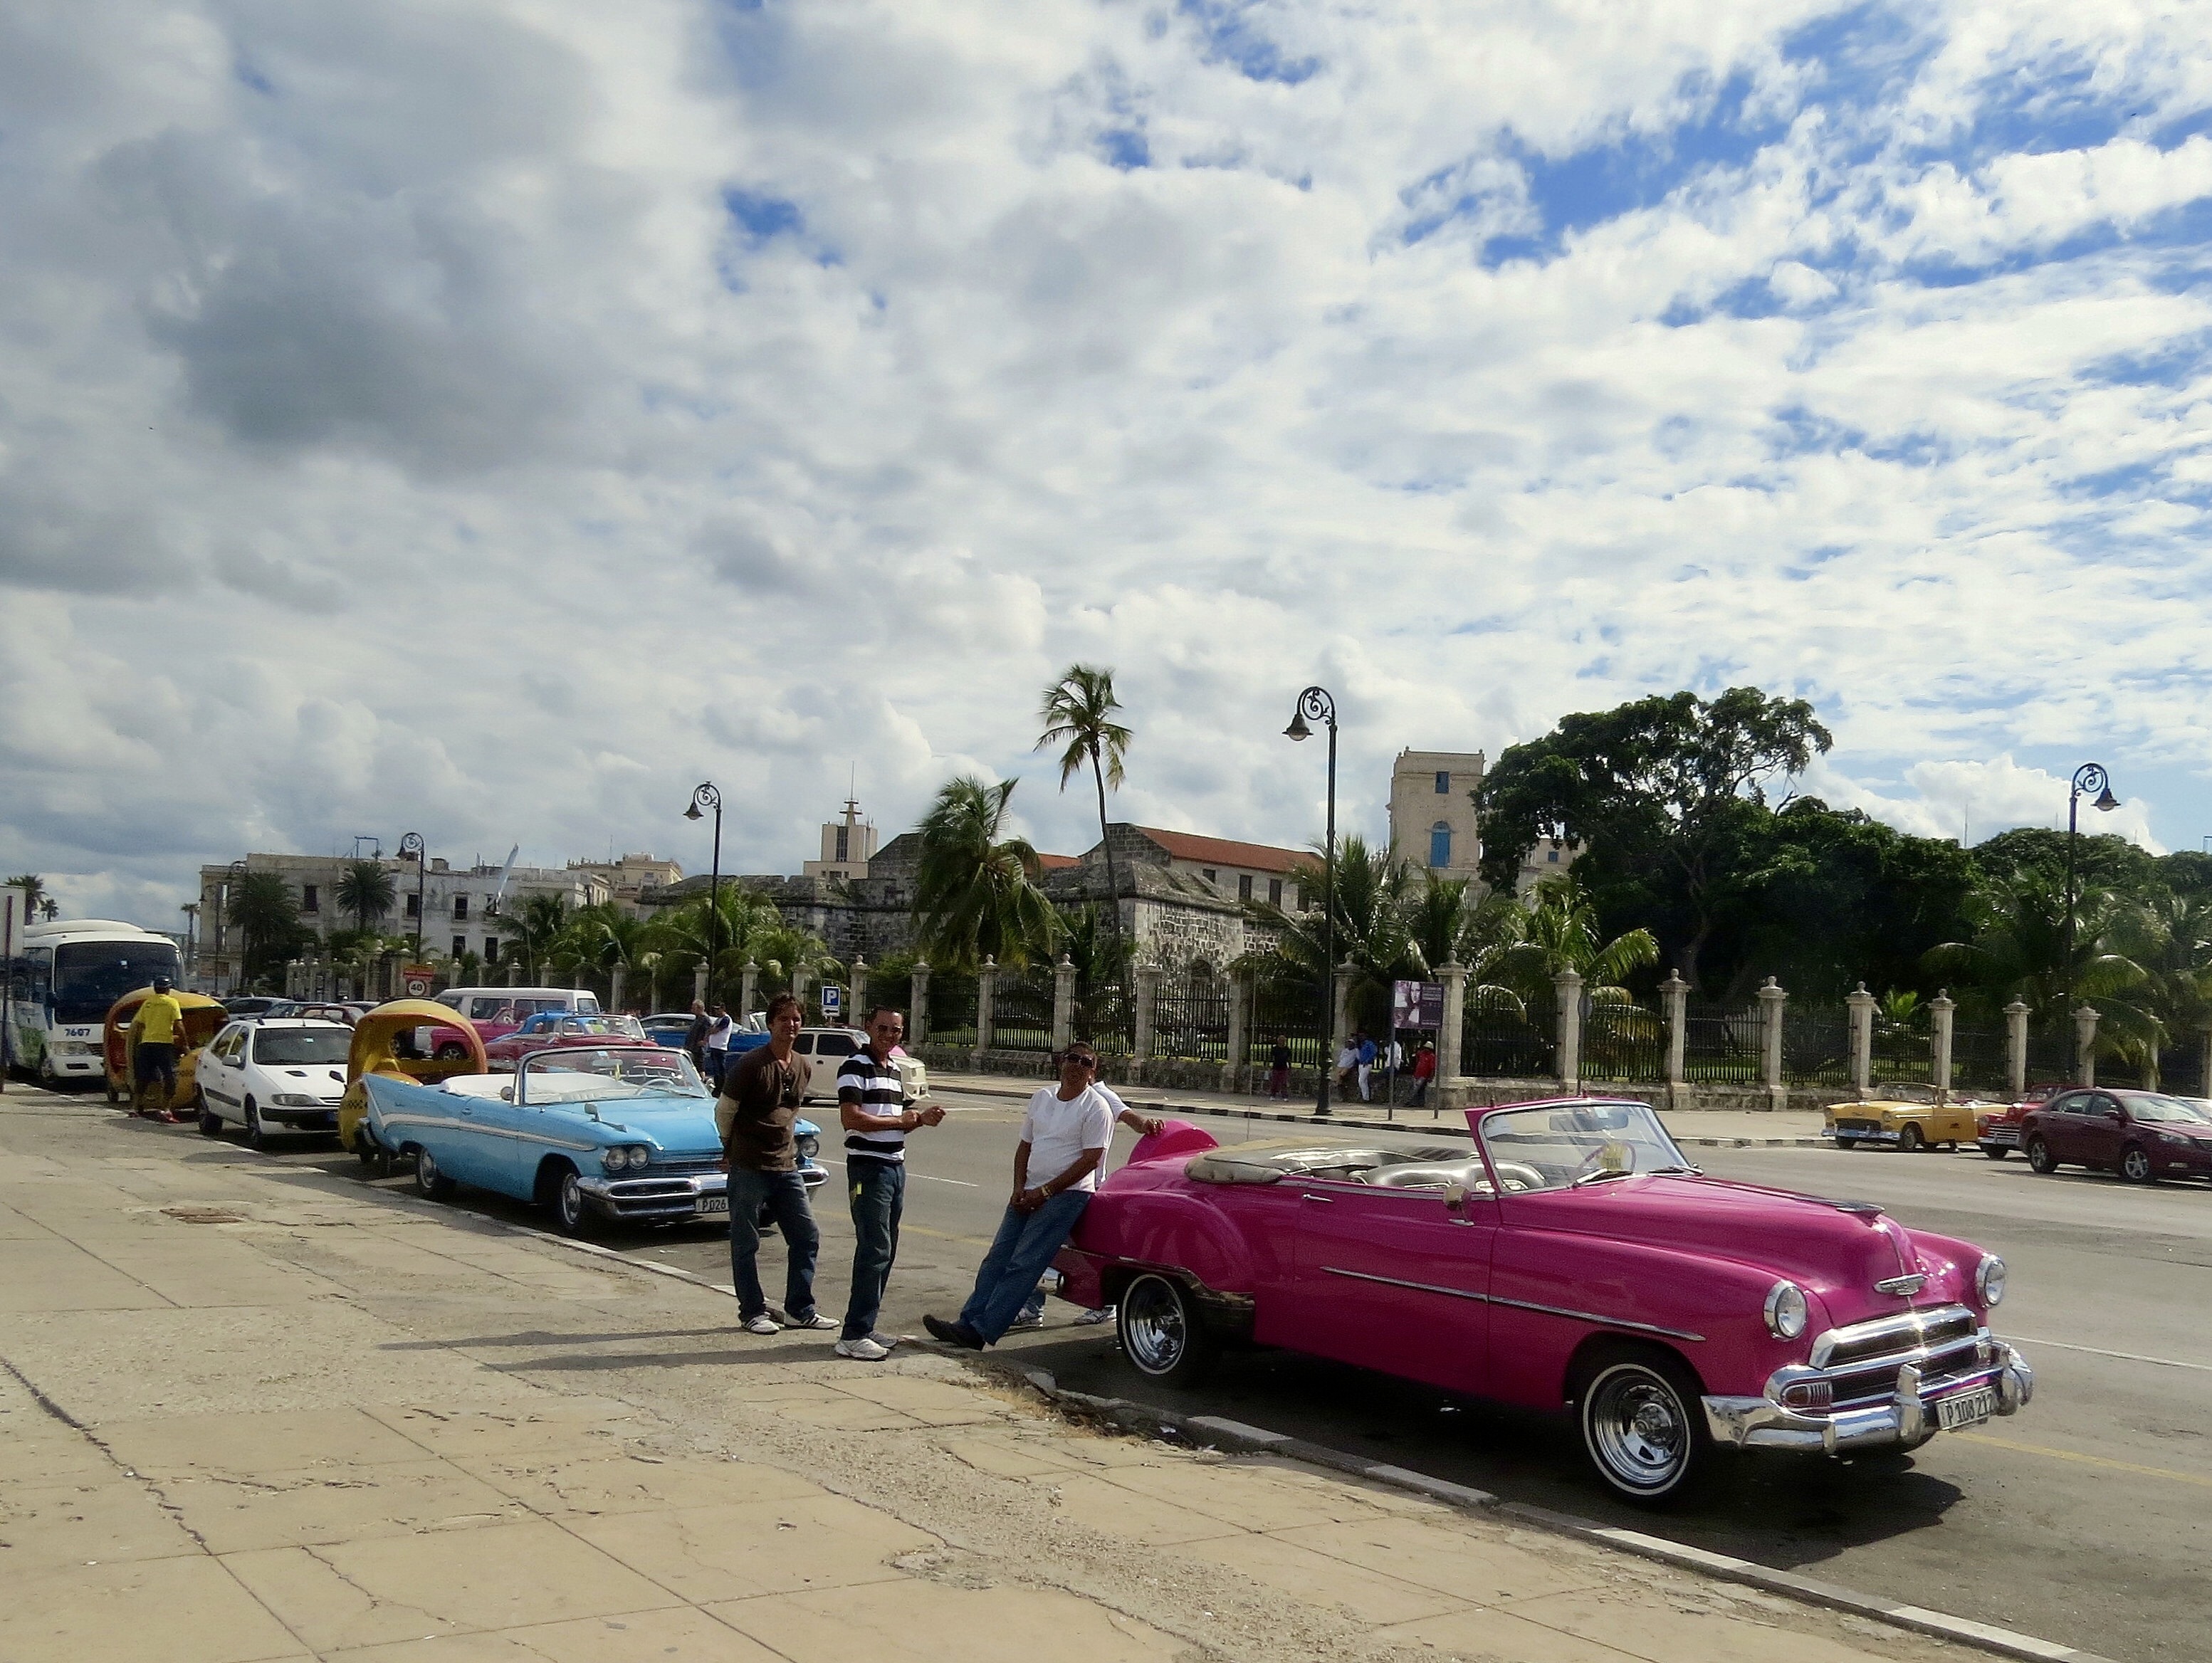 Американски дипломати в Куба се оплакаха от различни здравословни проблеми със загадъчен произход - загуба на слуха, симптоми на